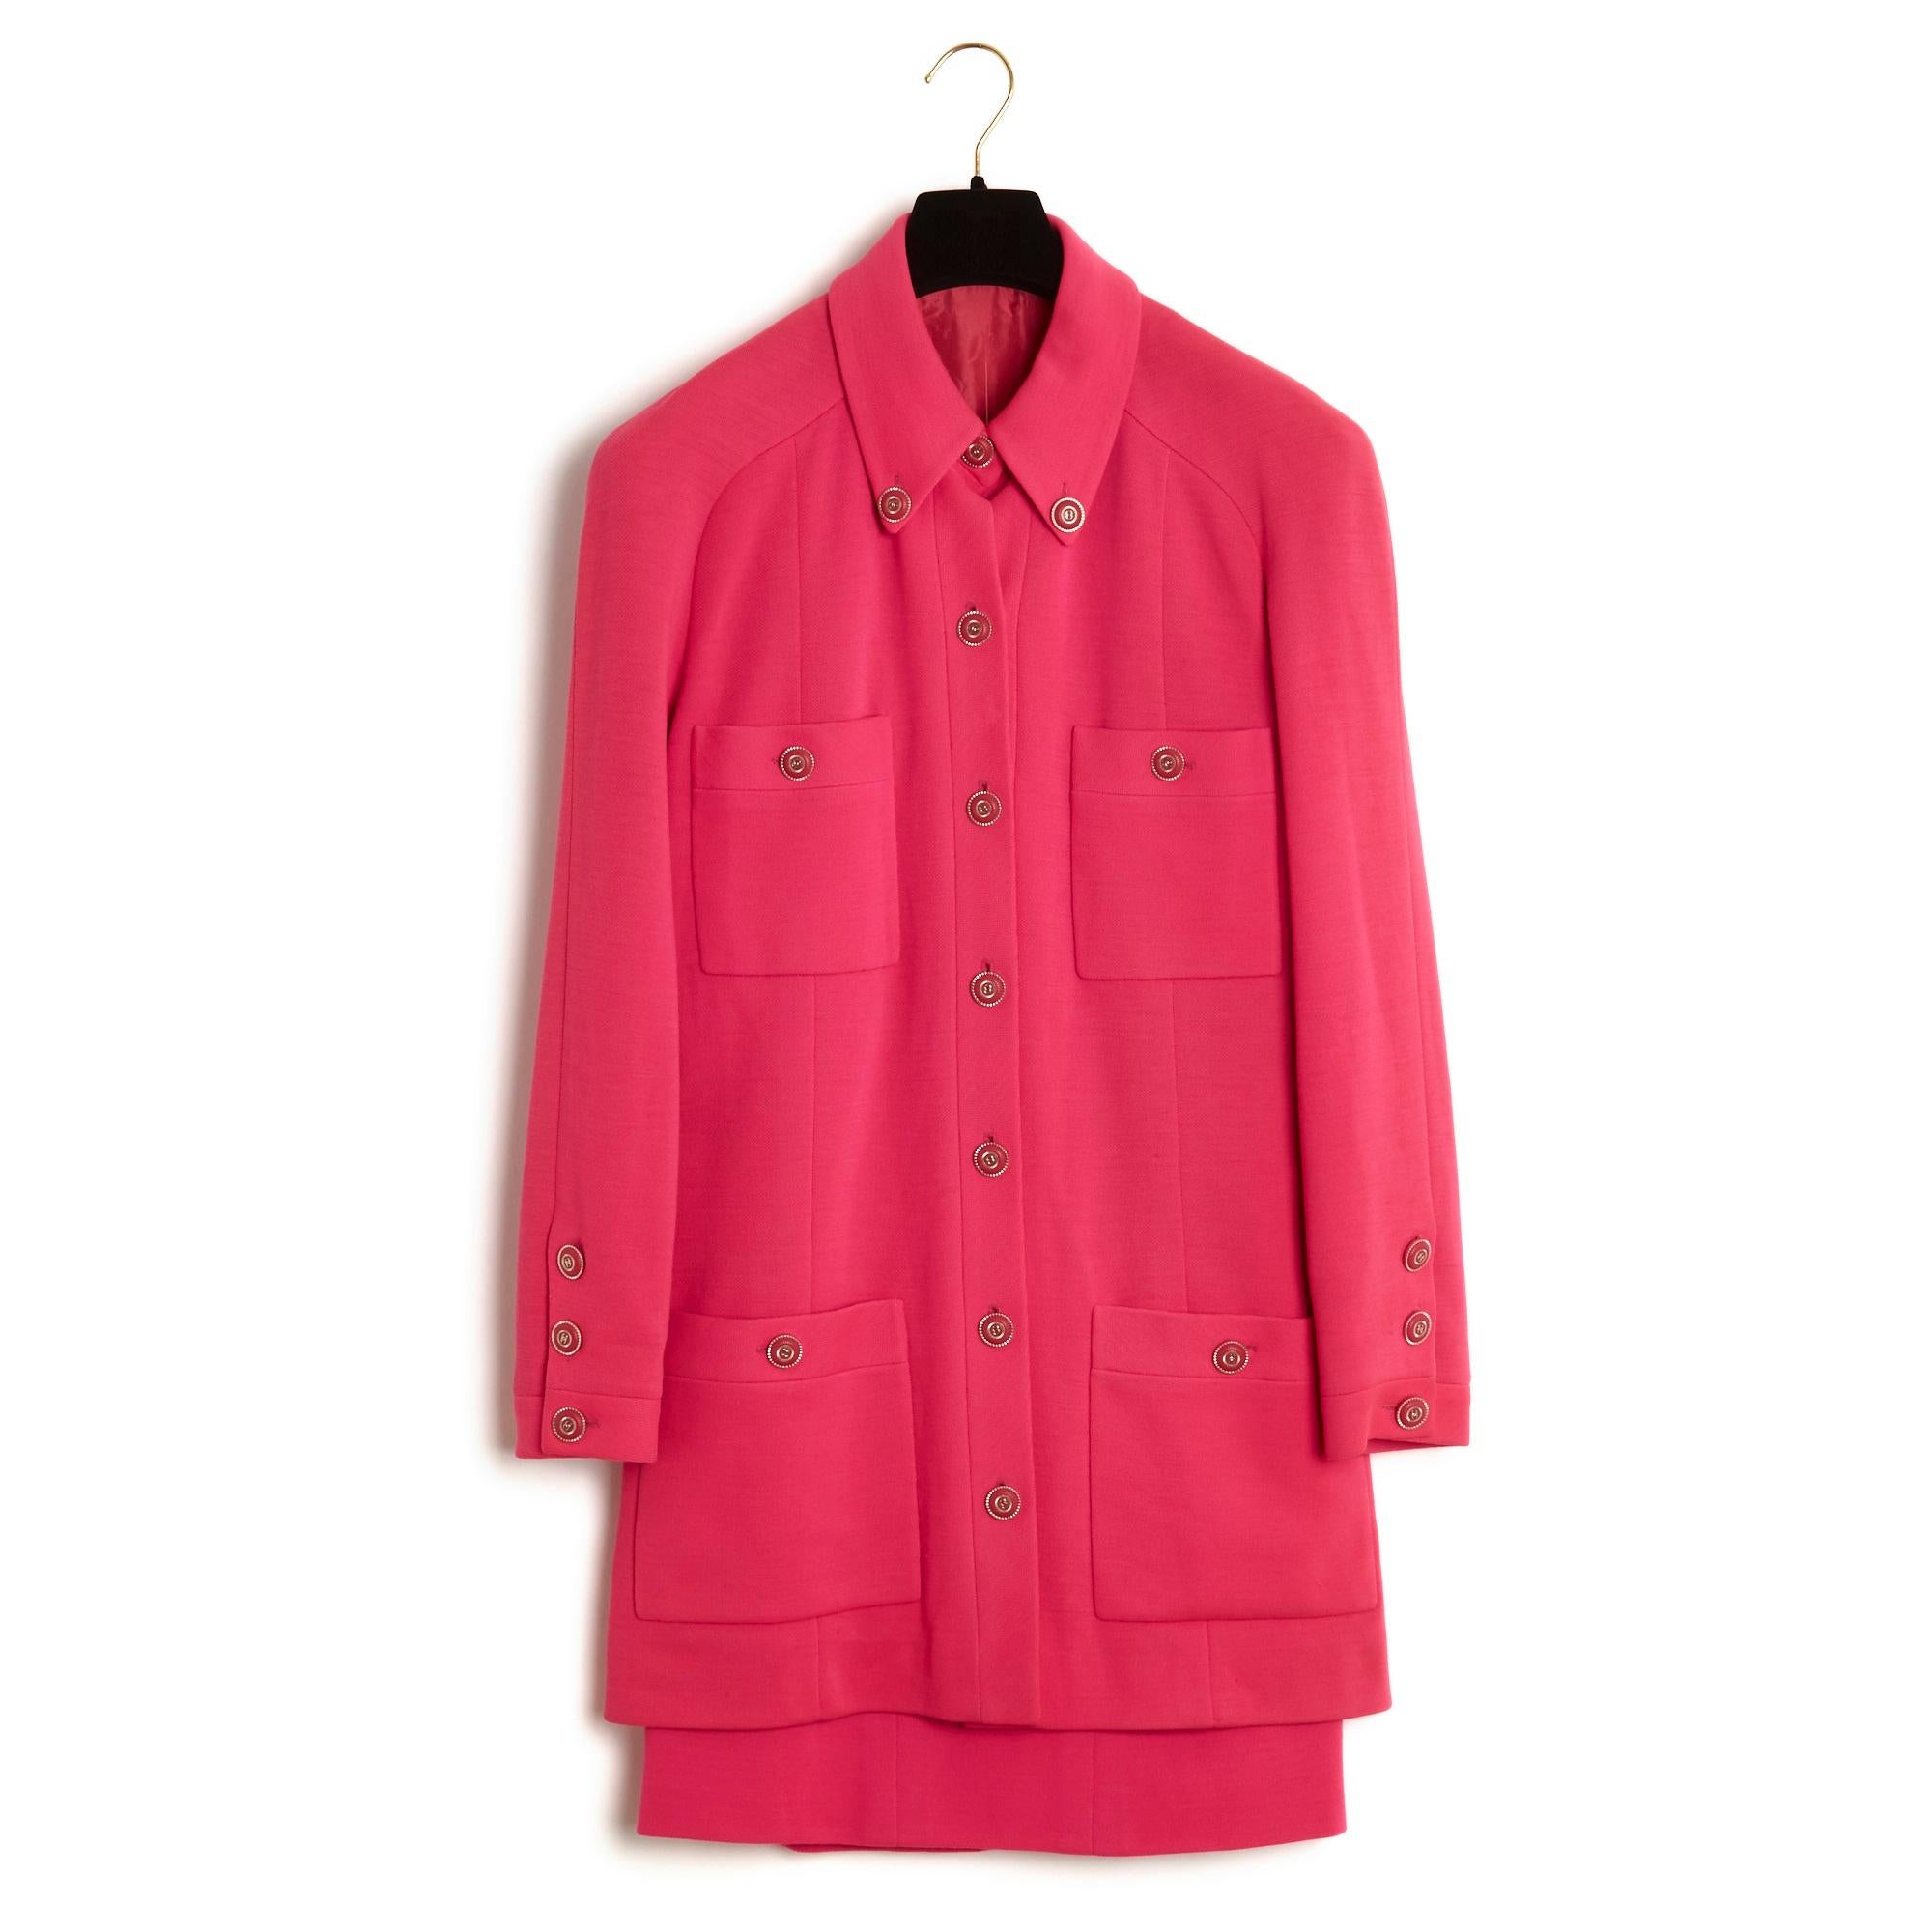 Ensemble Chanel Haute Couture circa 1994 en laine rose soutenu composé d'une veste, coupe droite large et mi-longue, col boutonné fermé sur toute la longueur par 7 boutons, 4 poches plaquées boutonnées, manches longues raglan fermées par 3 boutons,